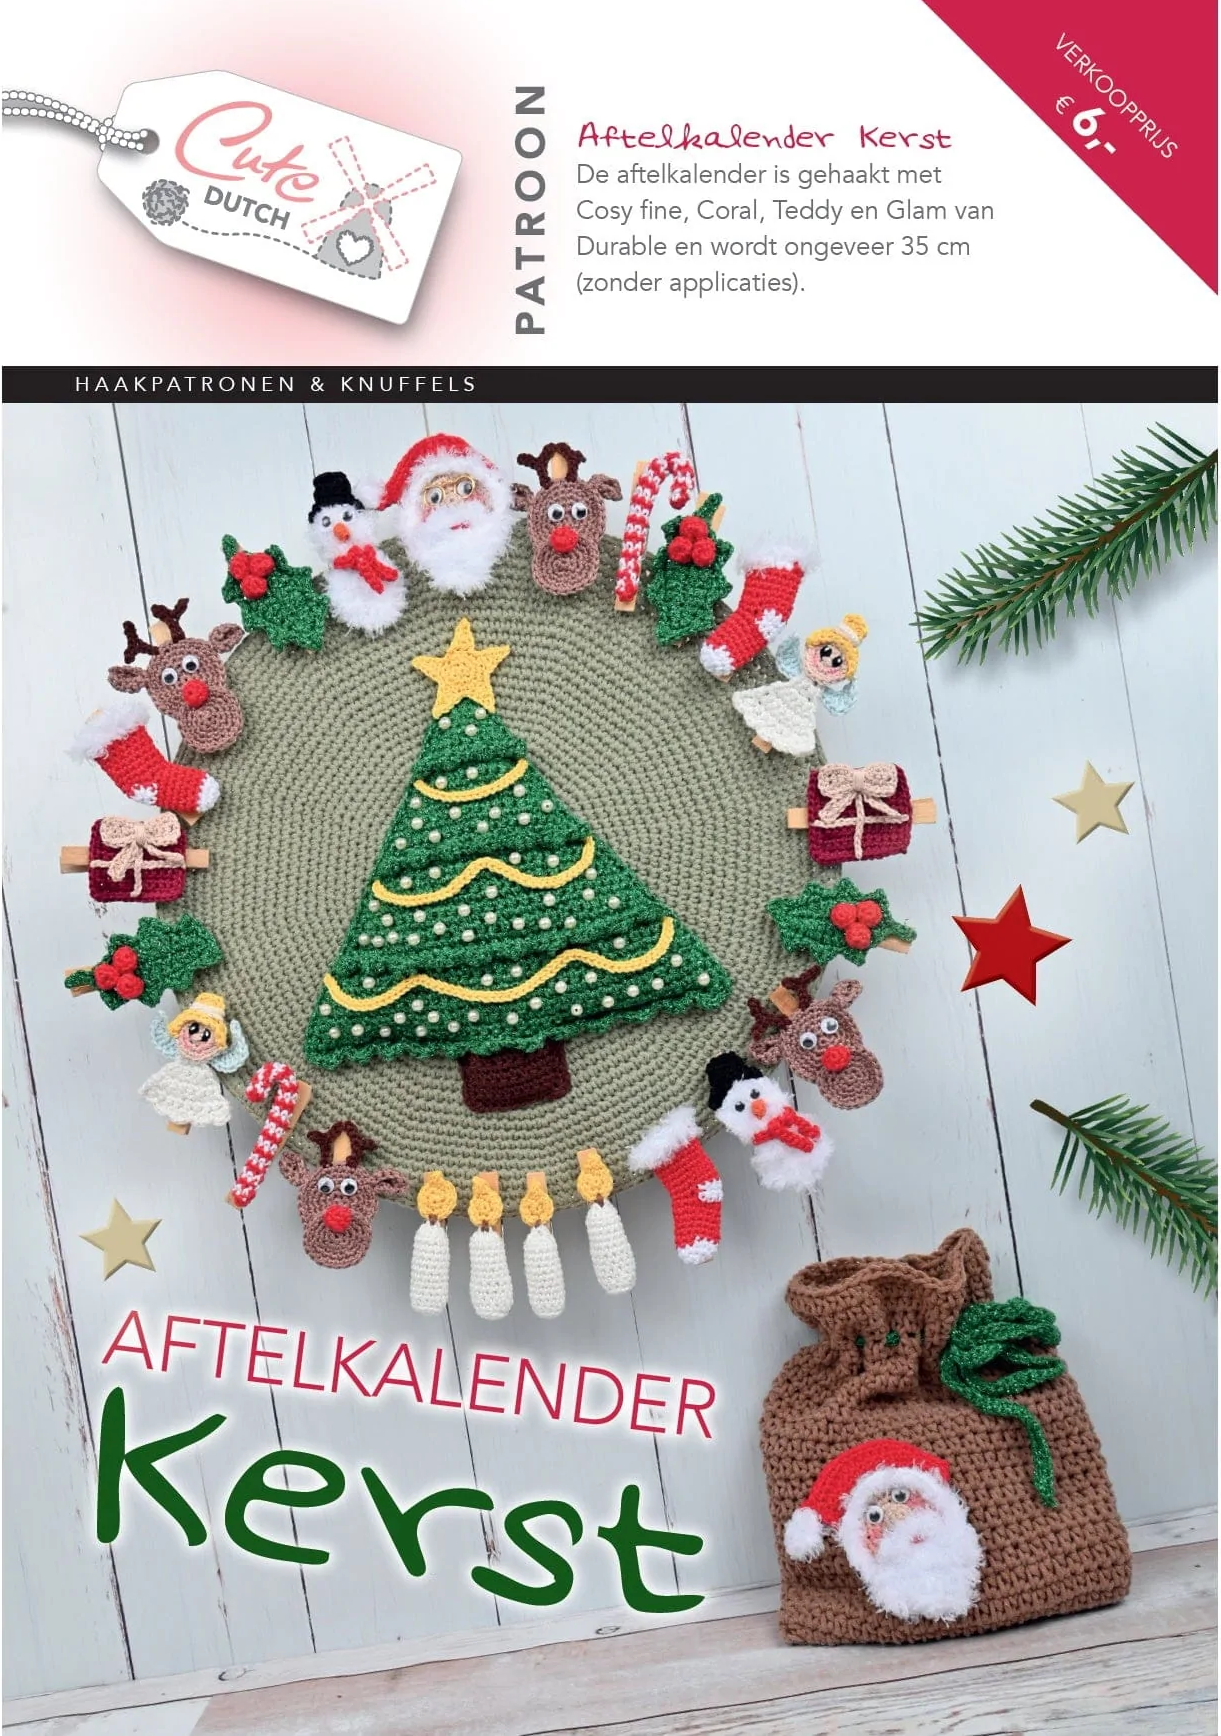 CuteDutch - Patroonboekje Aftelkalender Kerst 